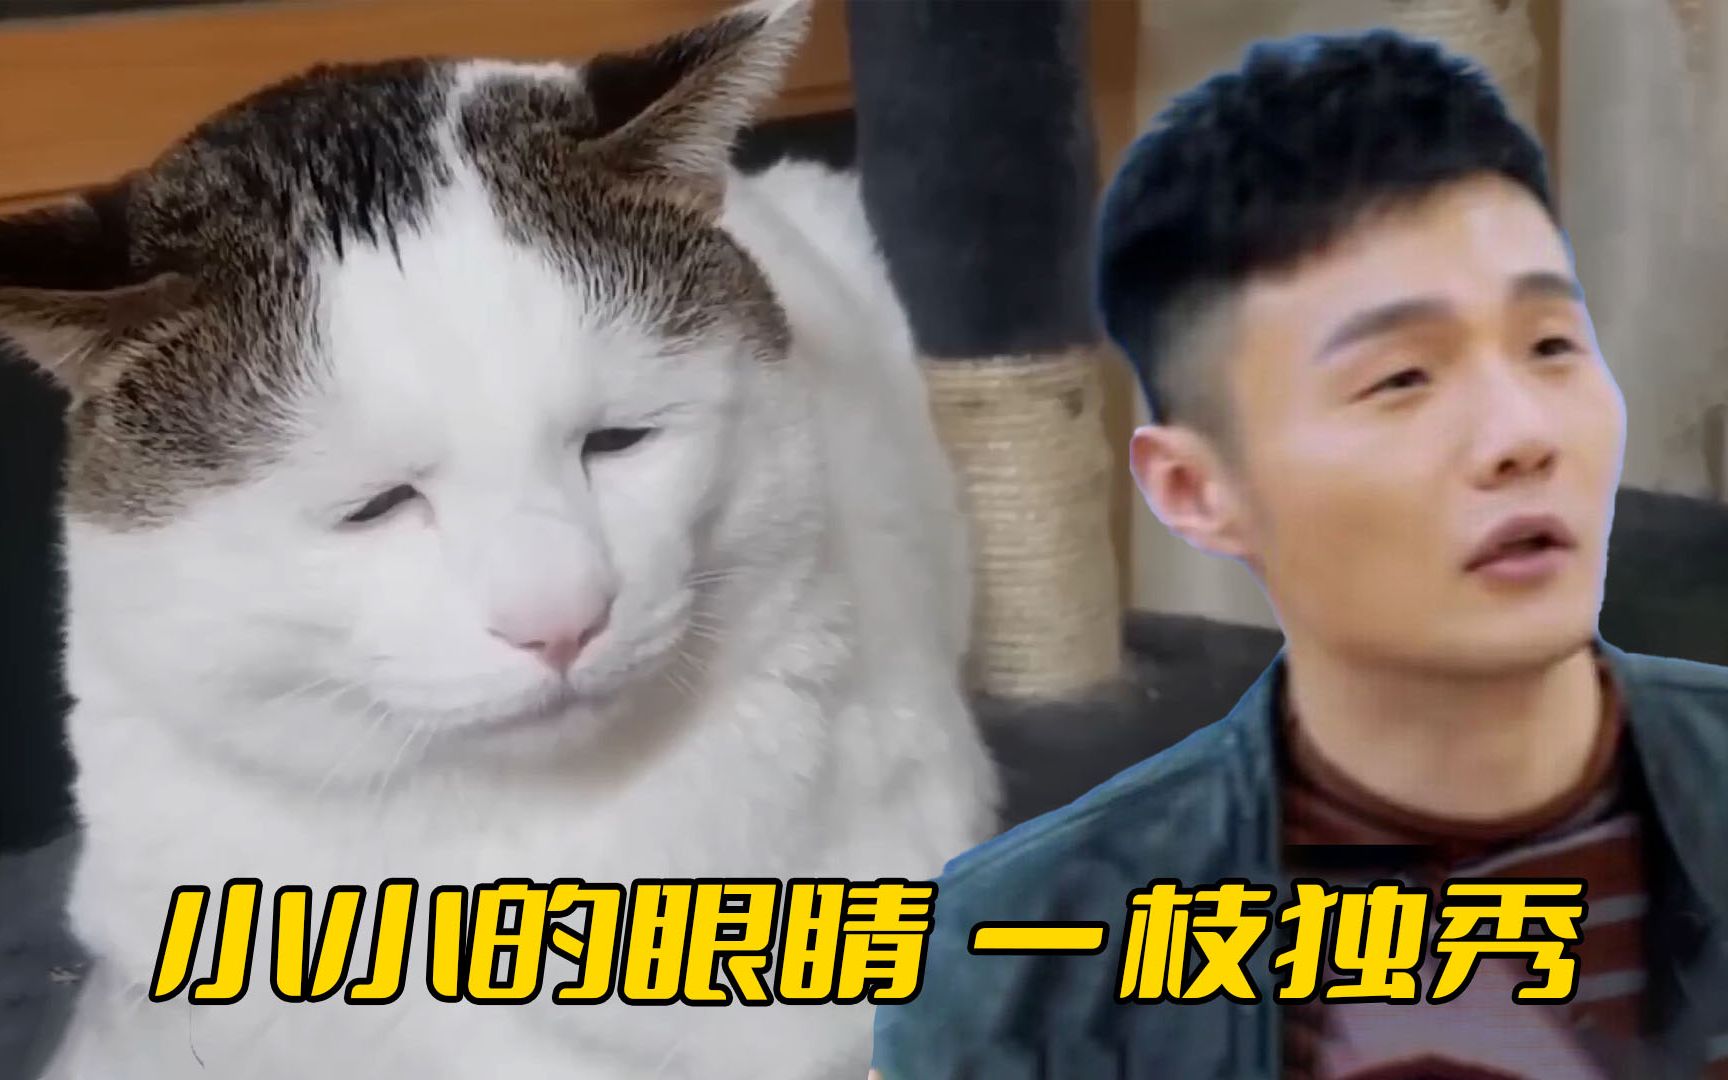 猫中“李荣浩”，每天愁眉苦脸像活不起了一样，主人看见它都叹气